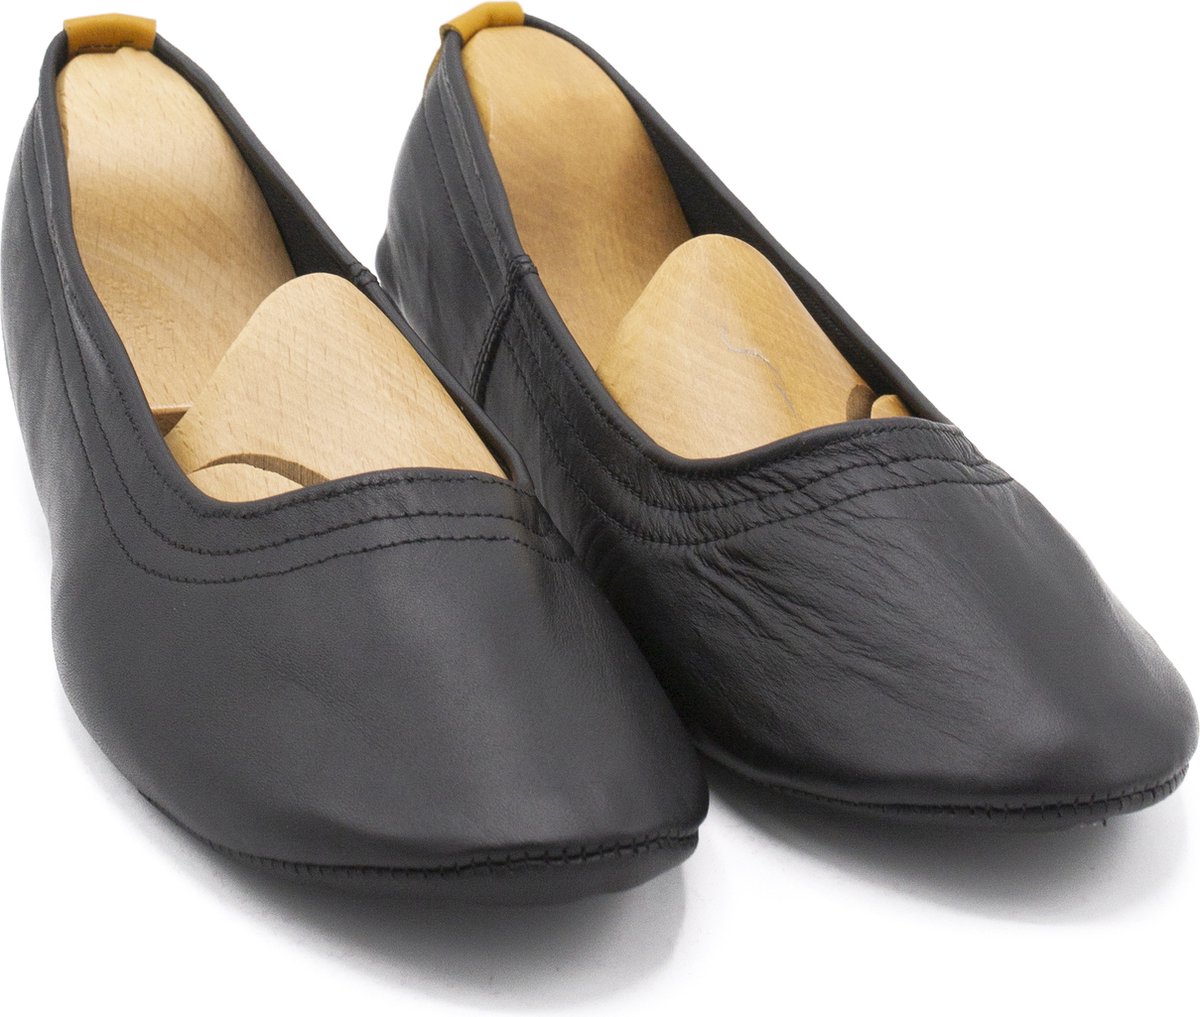 Kamarcin Slippers - Homeflat Black - Size 35